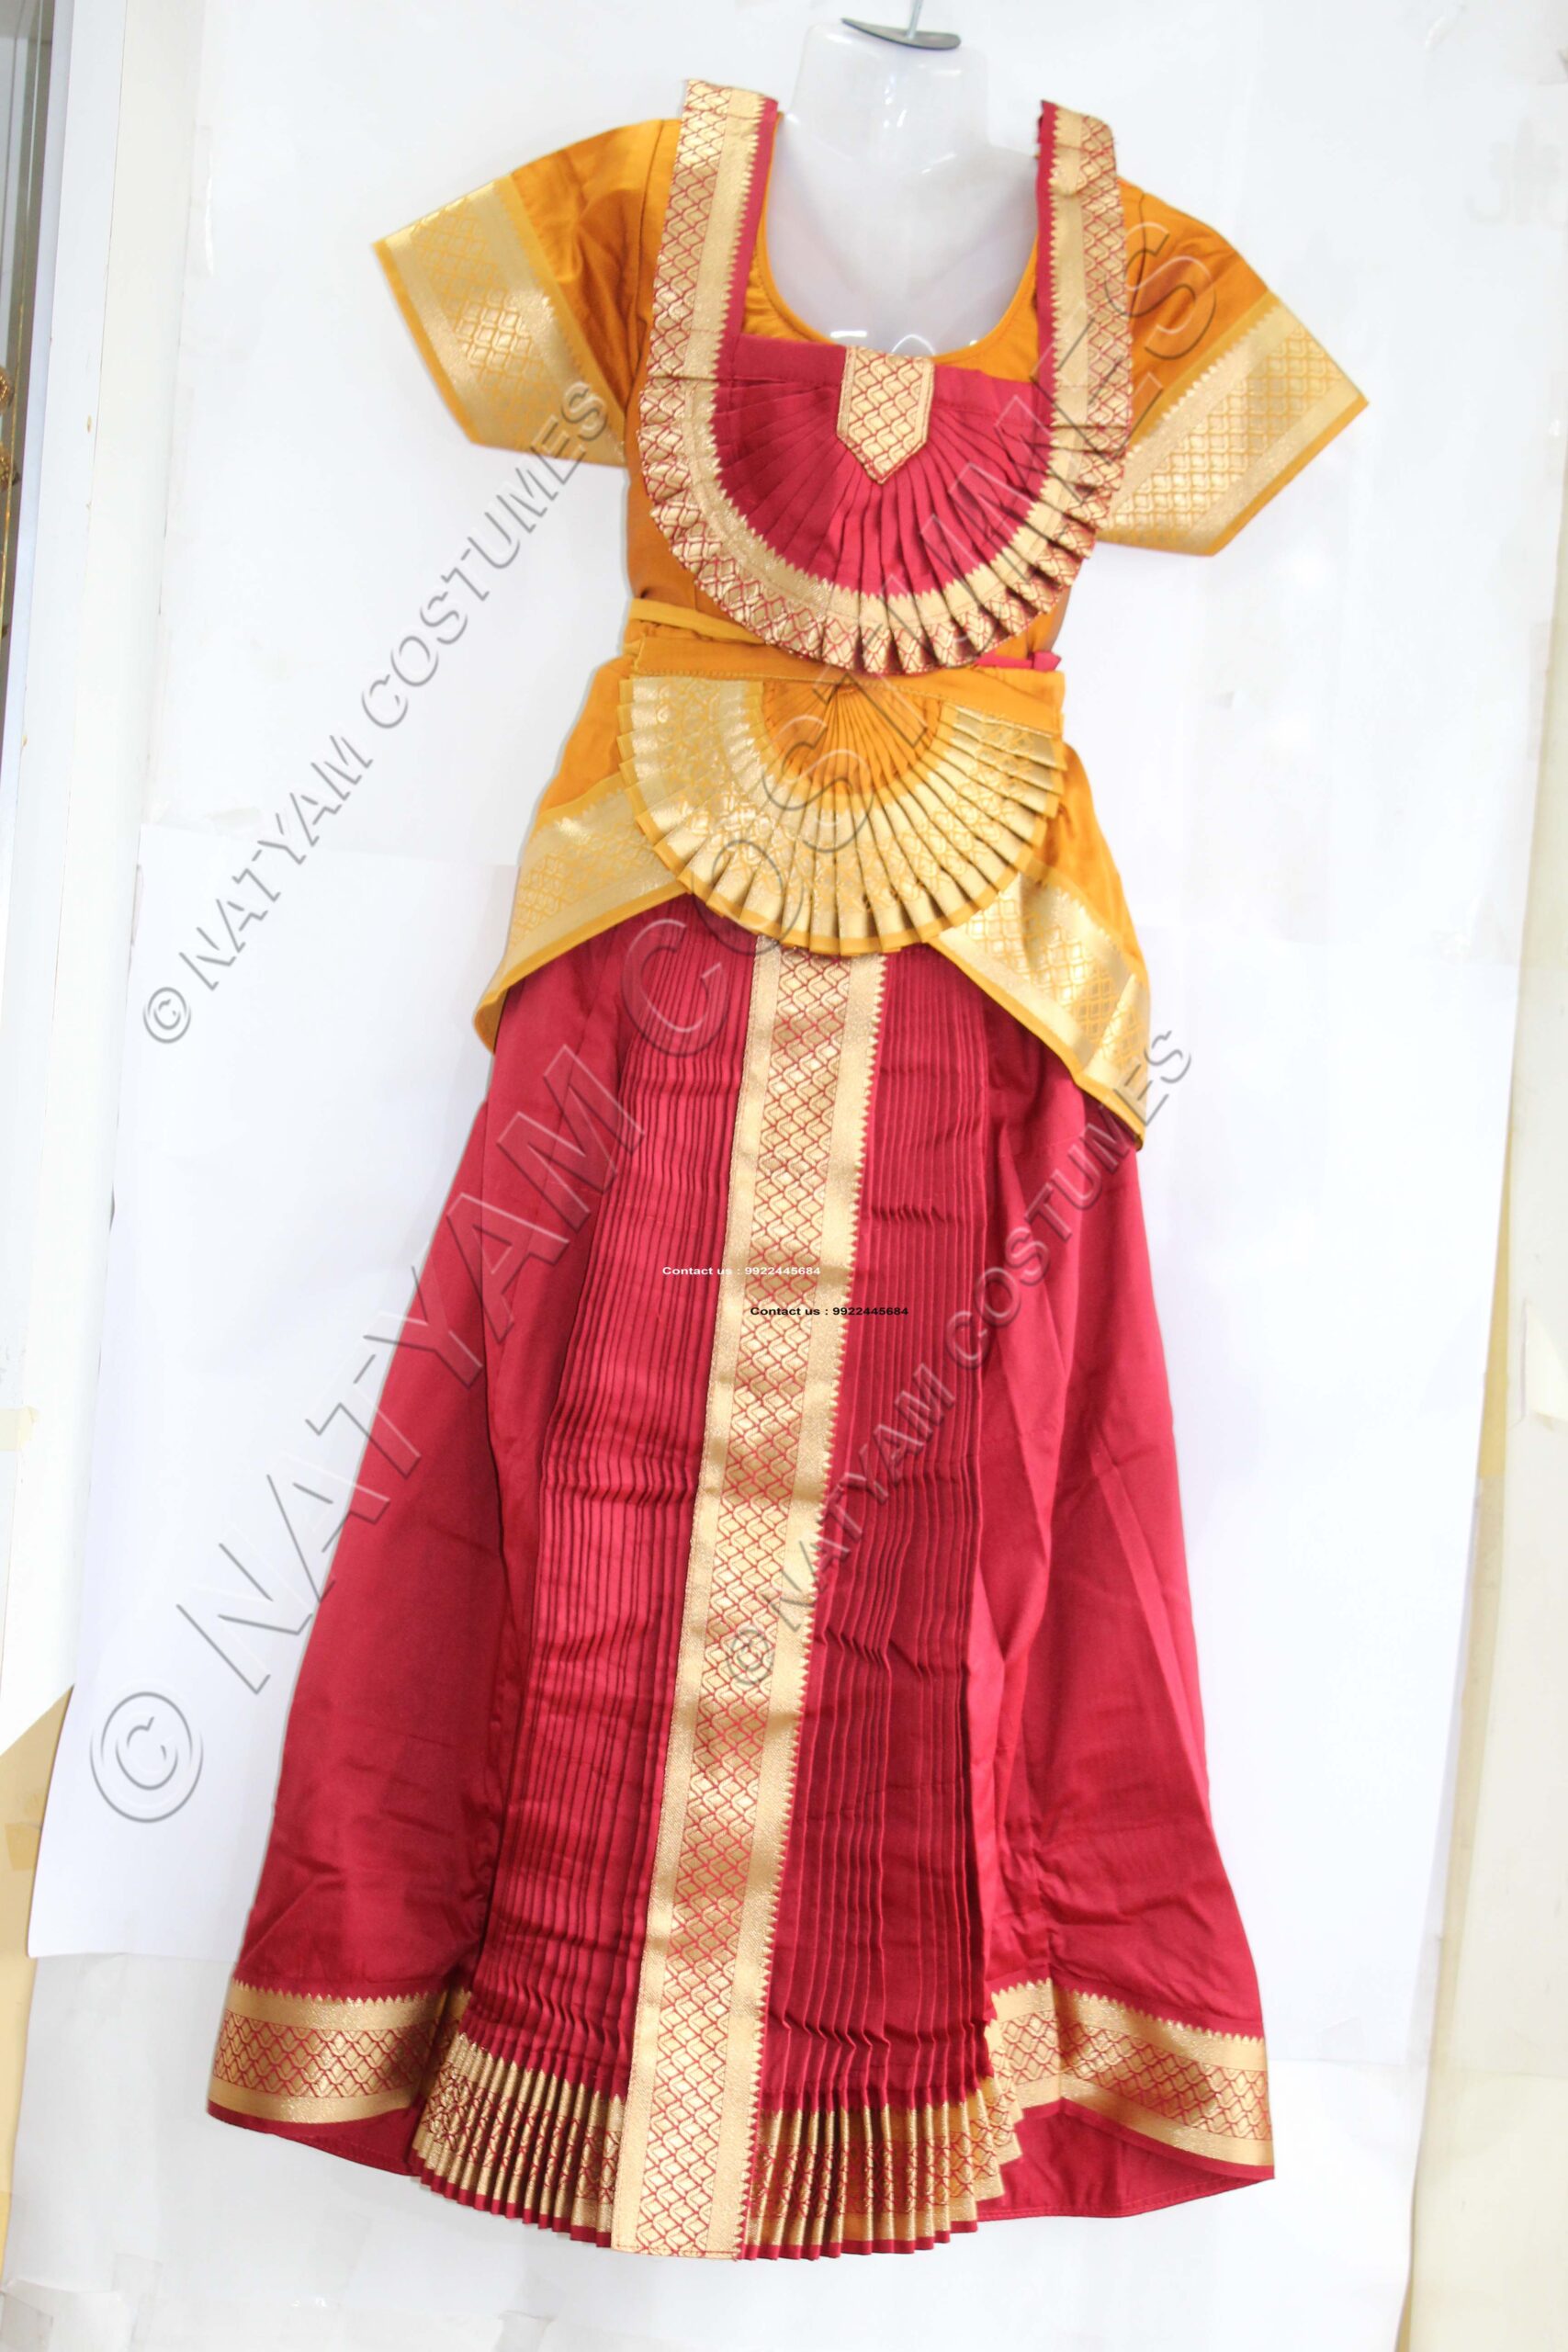 Bharatanatyam Skirt dress